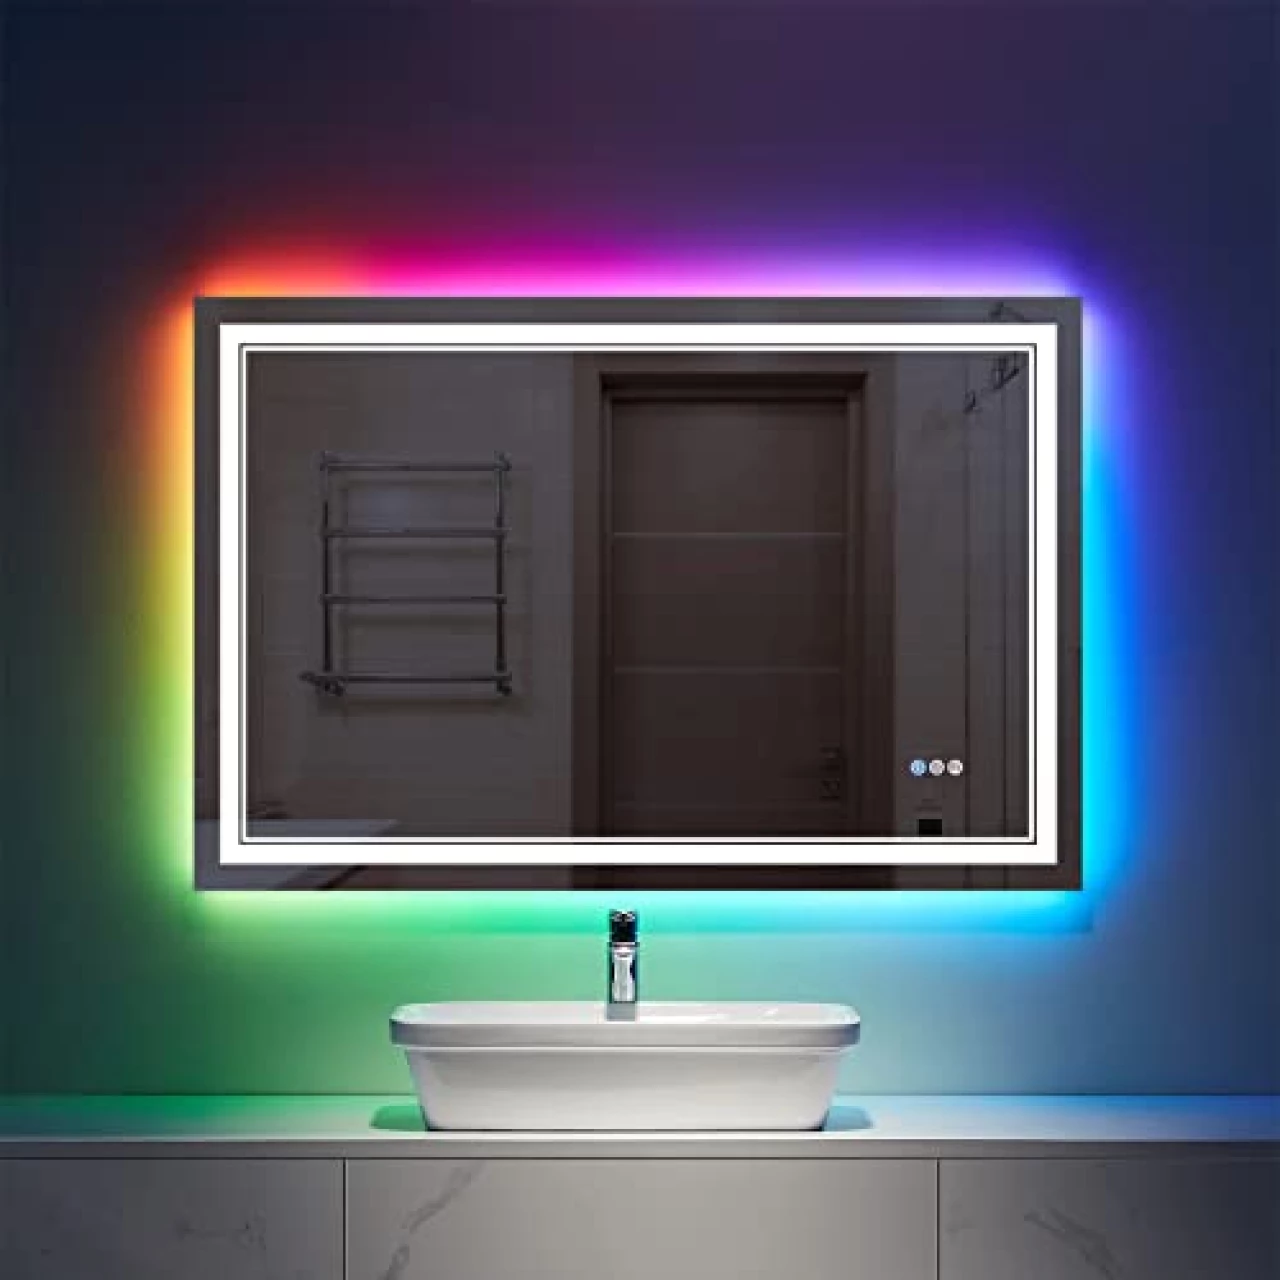 ISTRIPMF 40x24 inch LED Mirror for Bathroom